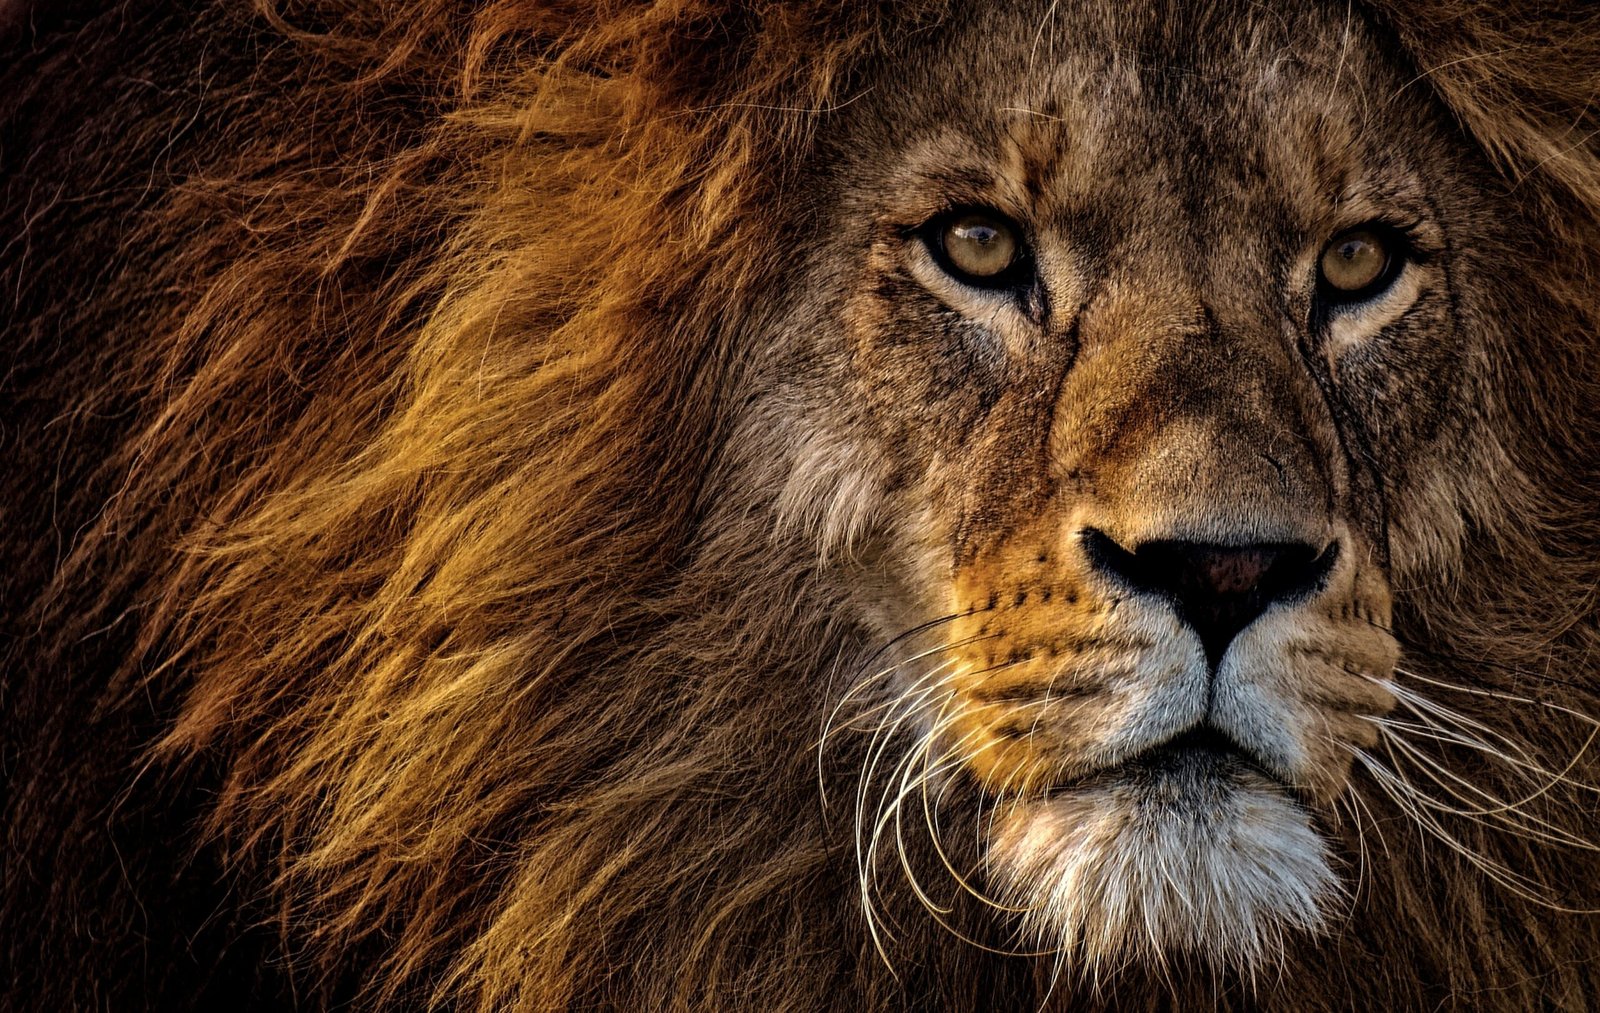 A lion looking fierce